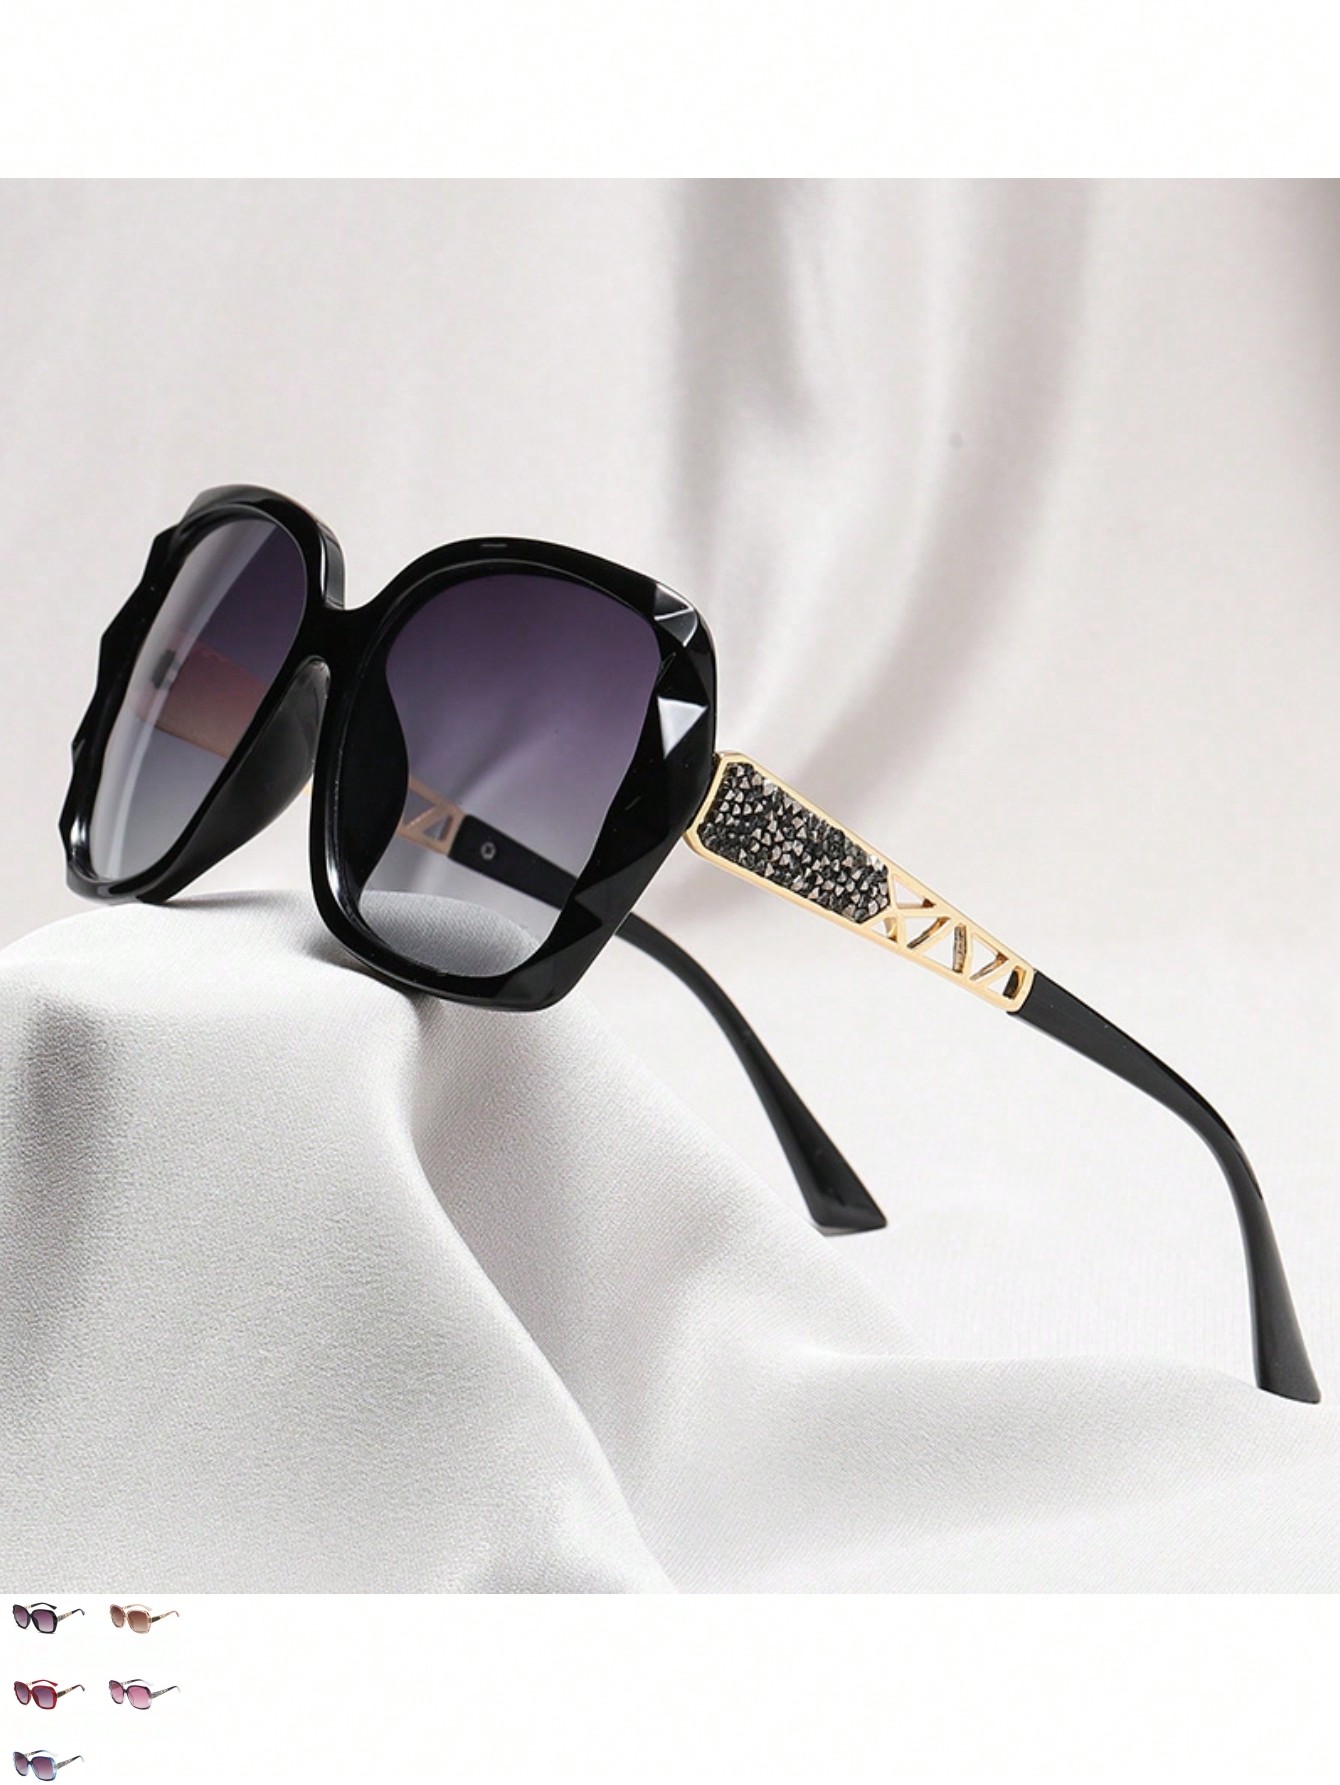 1шт женские солнцезащитные очки большого размера с защитой от ультрафиолета и стразами 1 шт мужские поляризованные солнцезащитные очки многоцветный